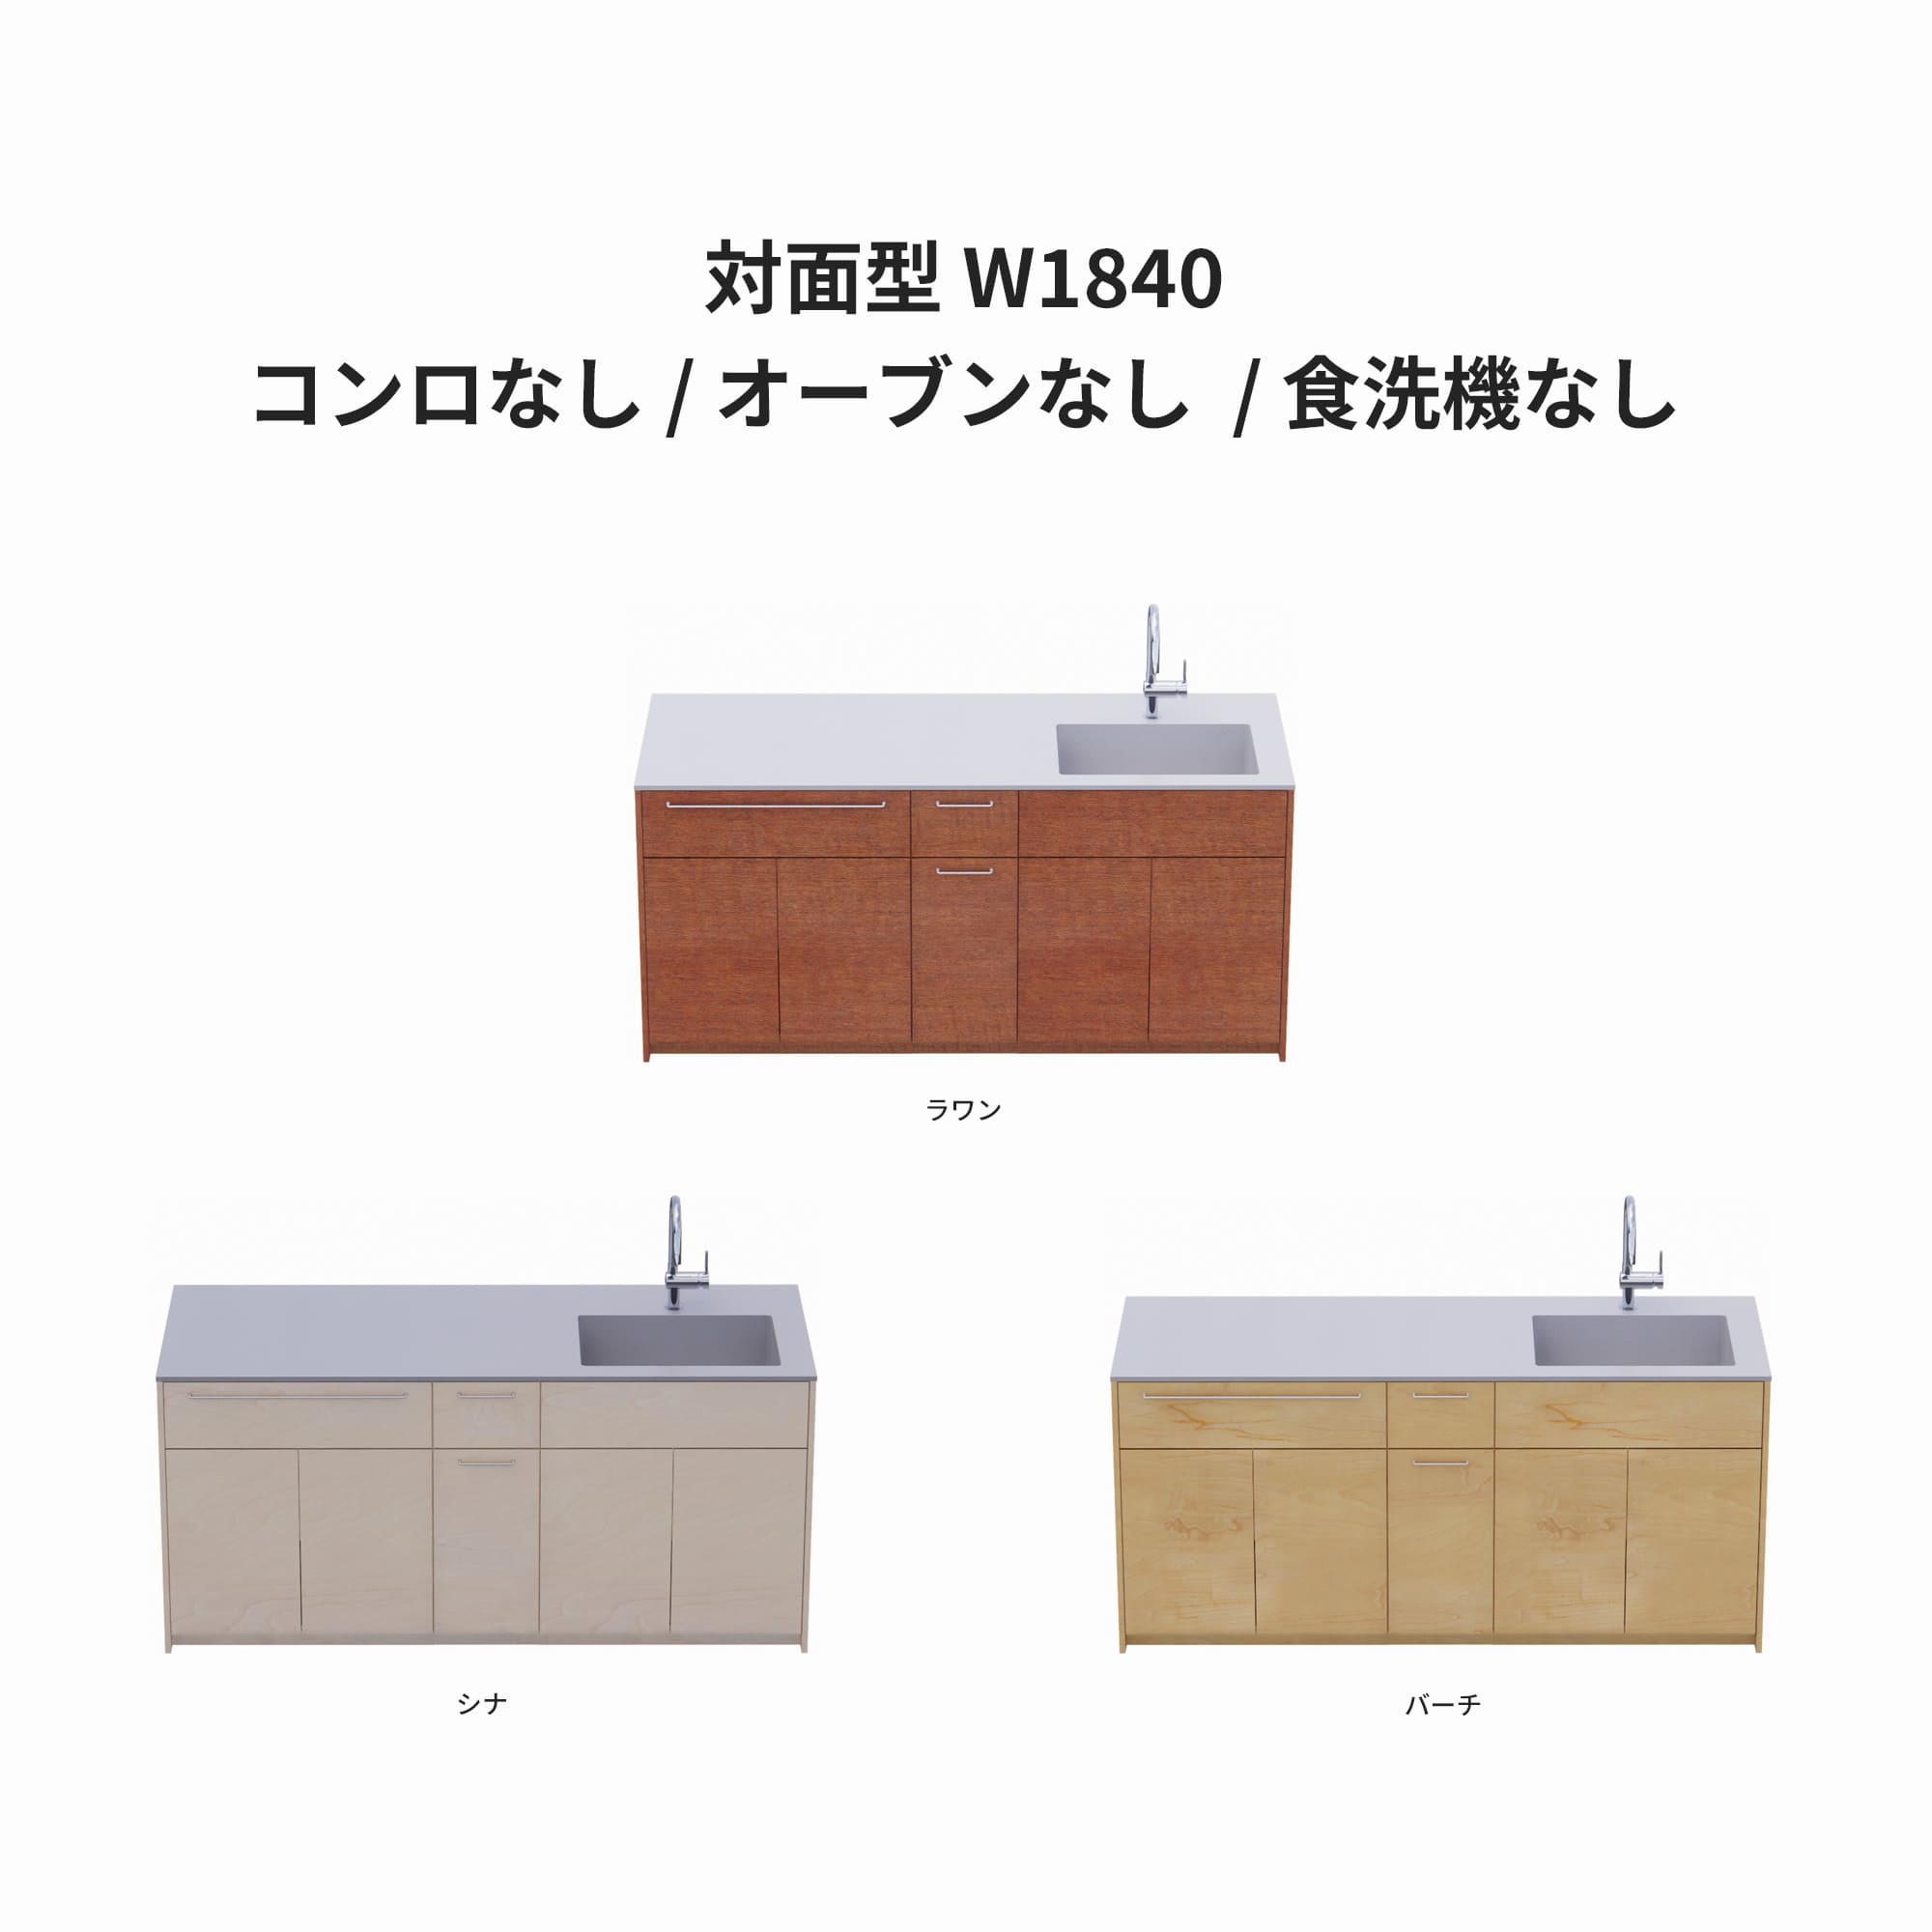 木製システムキッチン 対面型 W1840・コンロなし / オーブンなし / 食洗機なし KB-KC022-30-G183 ラワン・シナ・バーチが選択できます